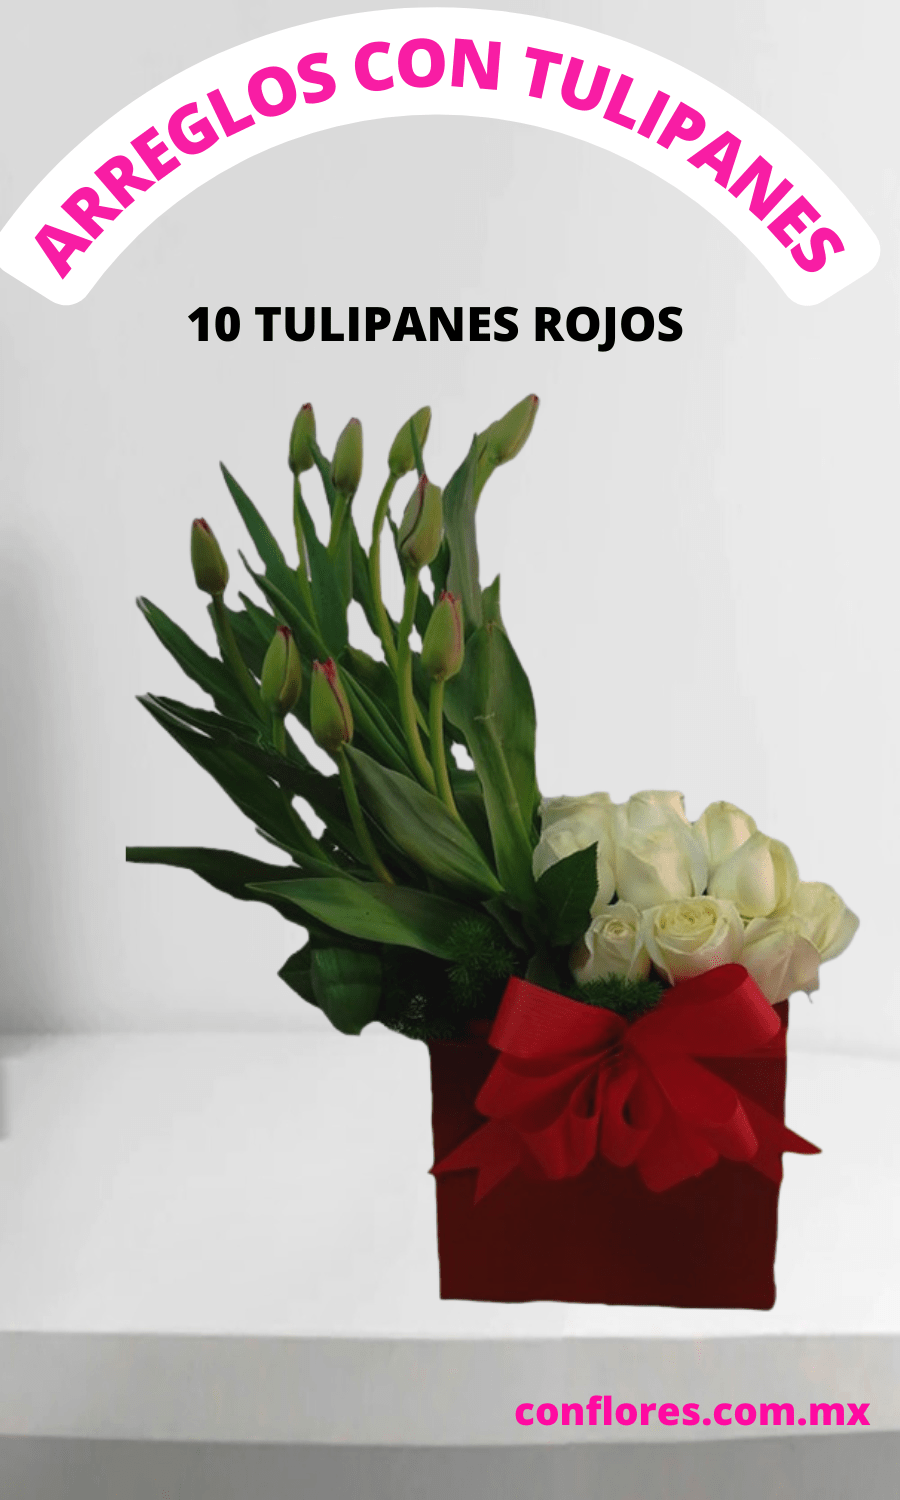 Arreglos Florales con Tulipanes Rojos Cristales - Florería conflores